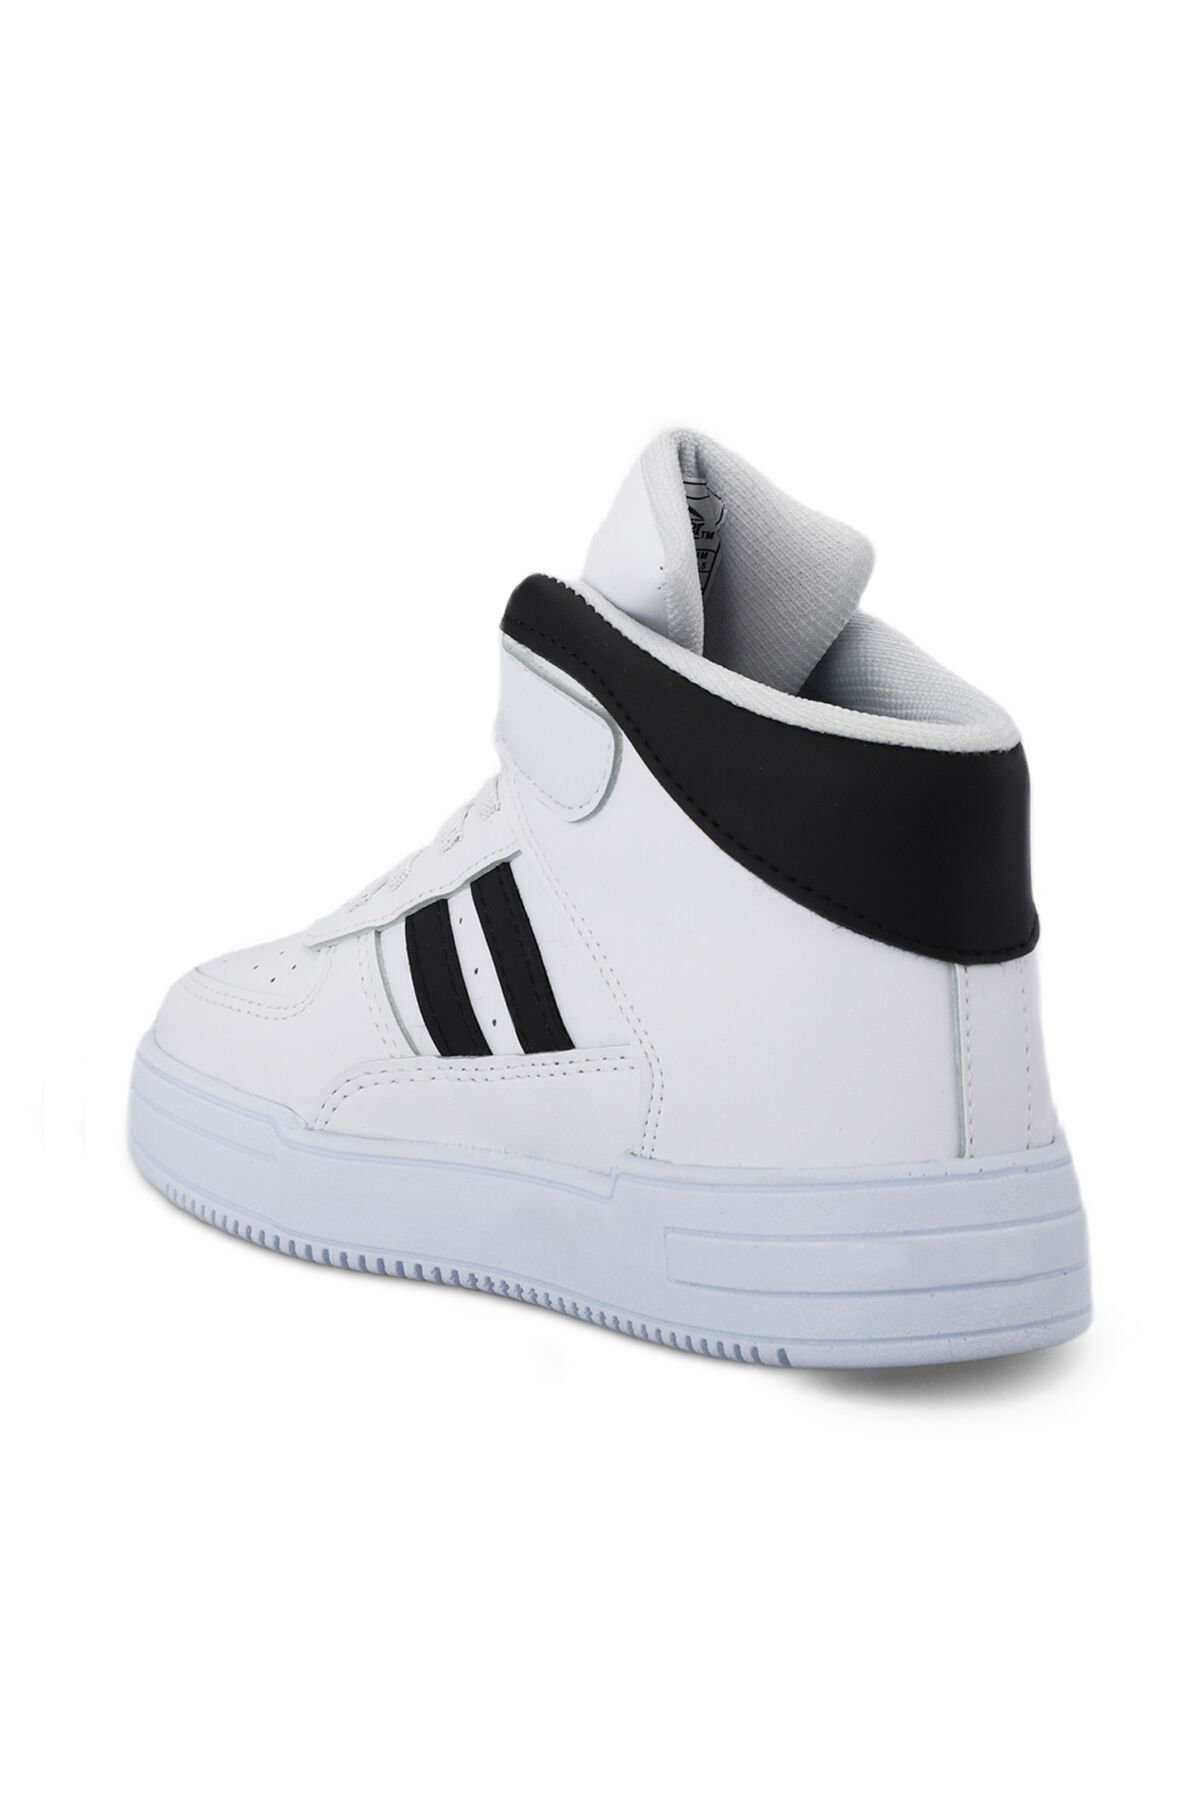 Slazenger NICOLA I Sneaker Erkek Çocuk Ayakkabı Beyaz / Siyah - Thumbnail